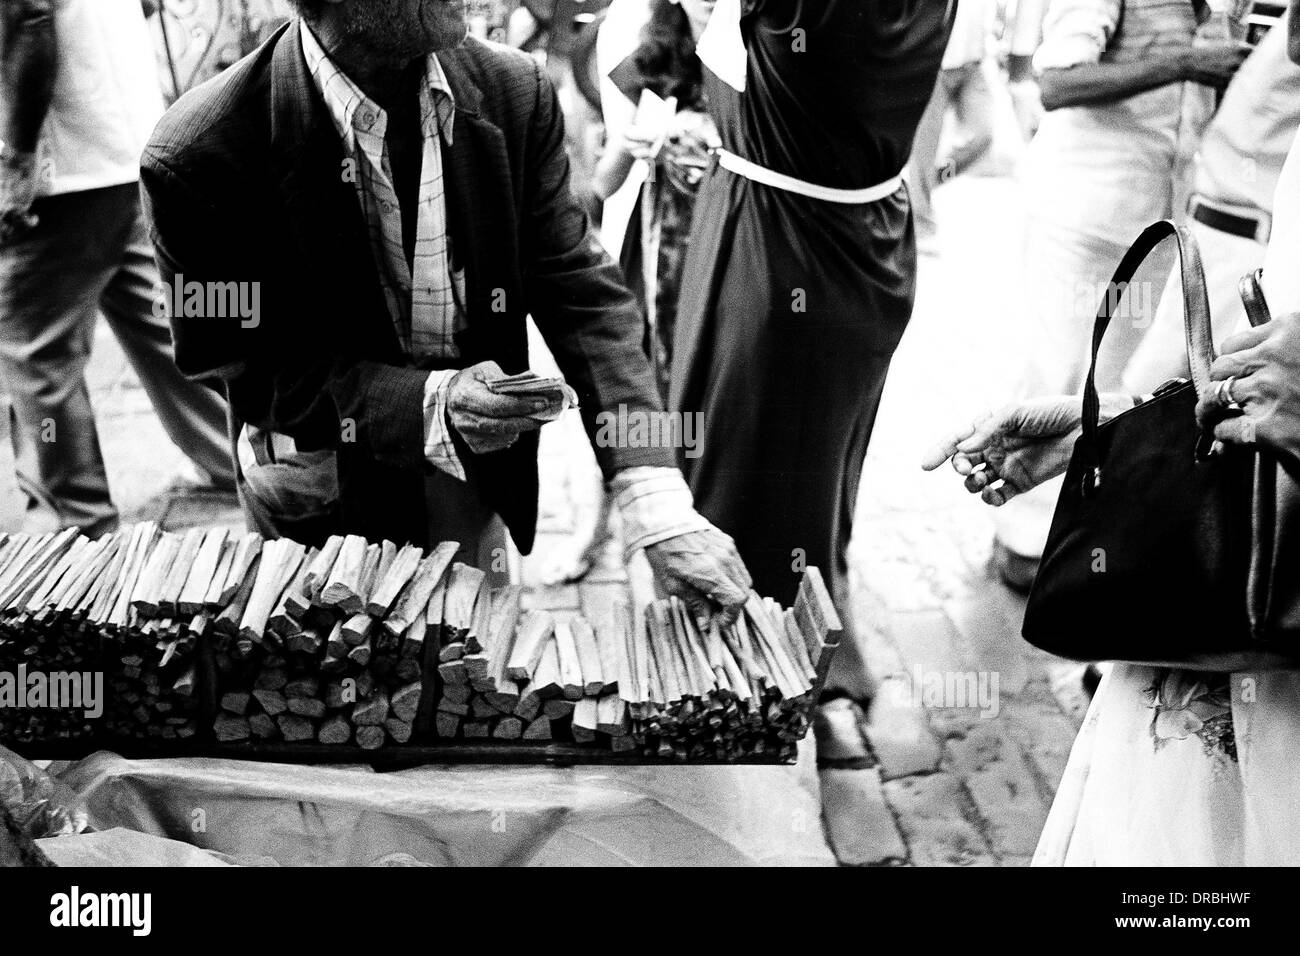 Sandalwood sticks for sale on Parsi New Year, Mumbai, Maharashtra, India, 1983 Stock Photo